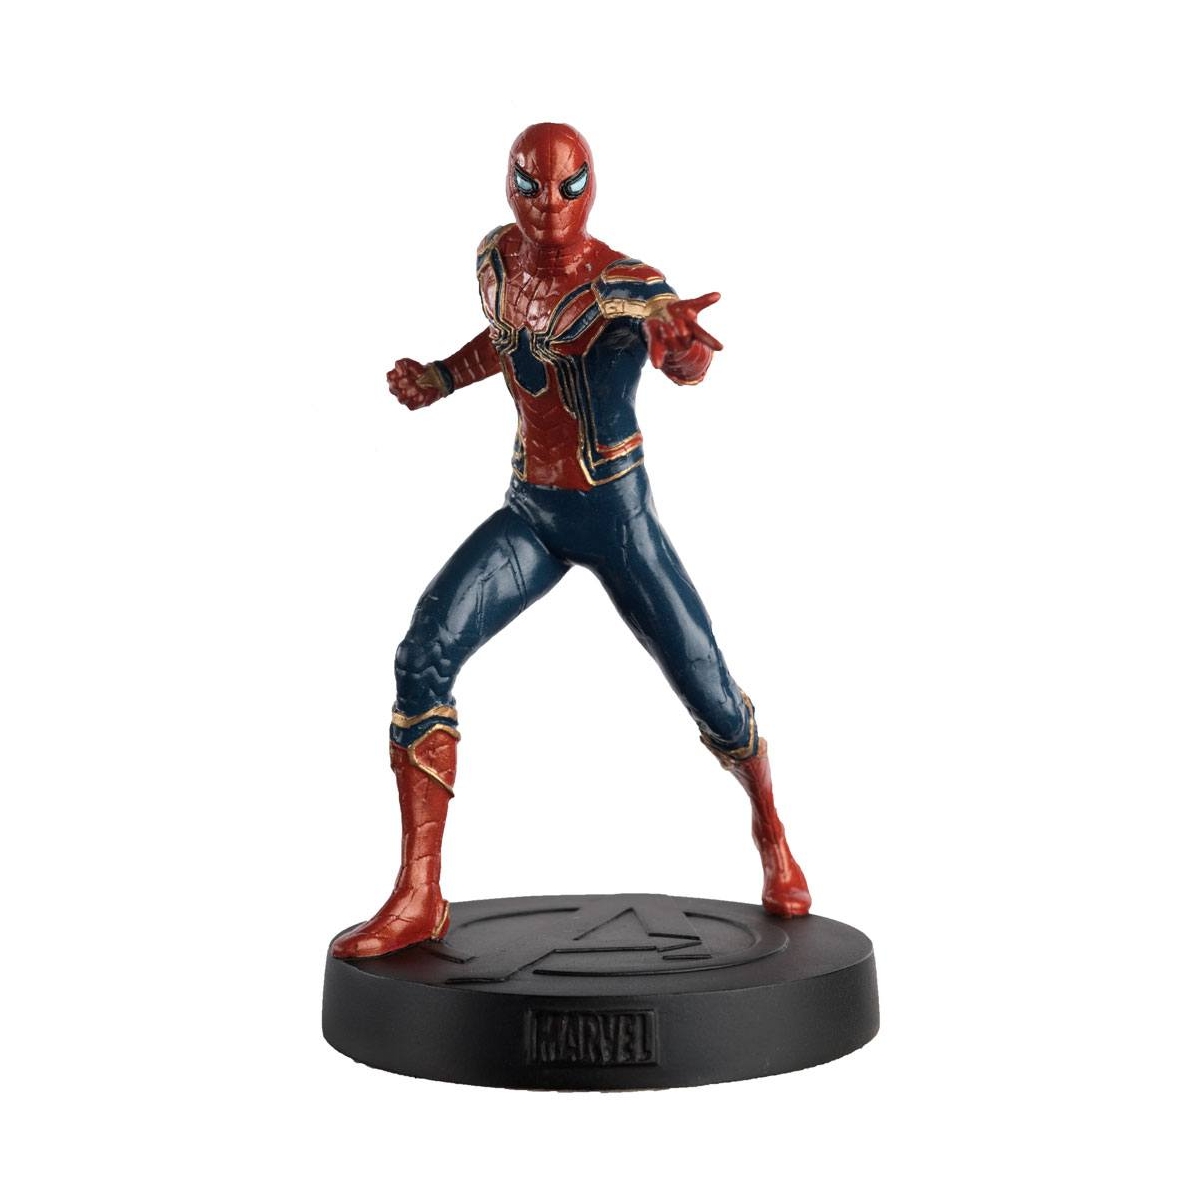 https://www.figurine-discount.com/44867-thickbox_default/marvel-figurine-movie-collection-116-iron-spider-spider-man-14-cm.jpg